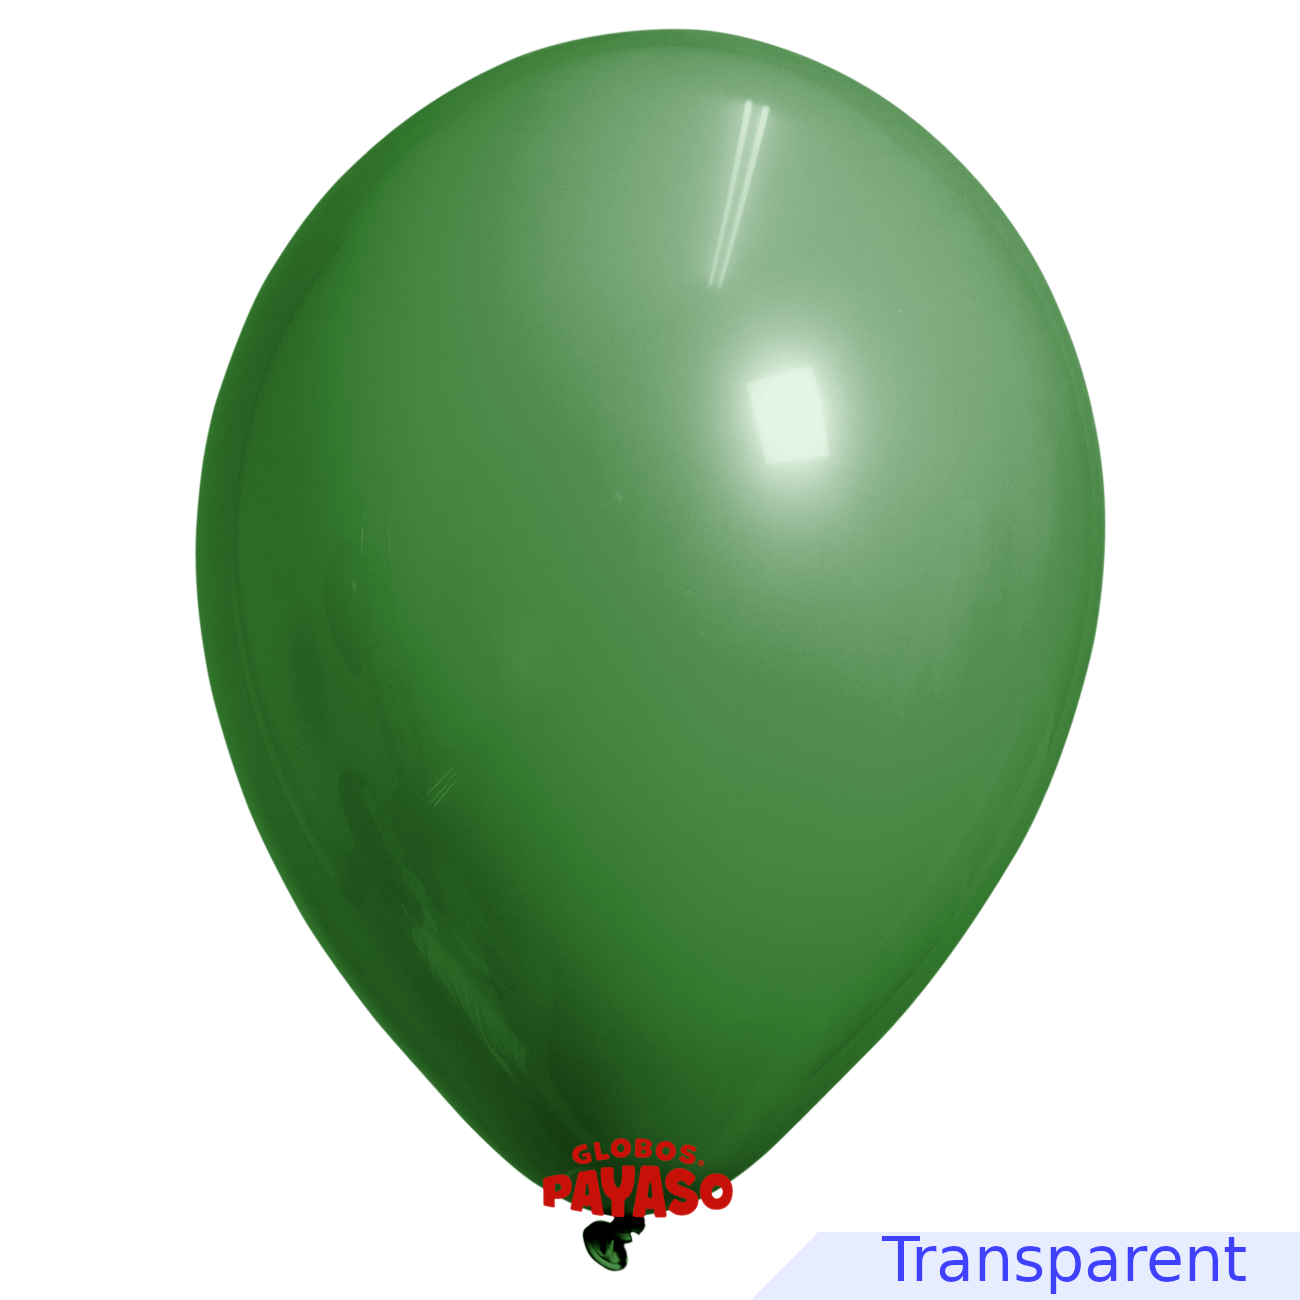 Globos Payaso / Unique 24" Vert Émeraude Translucide Décorateur Ballon